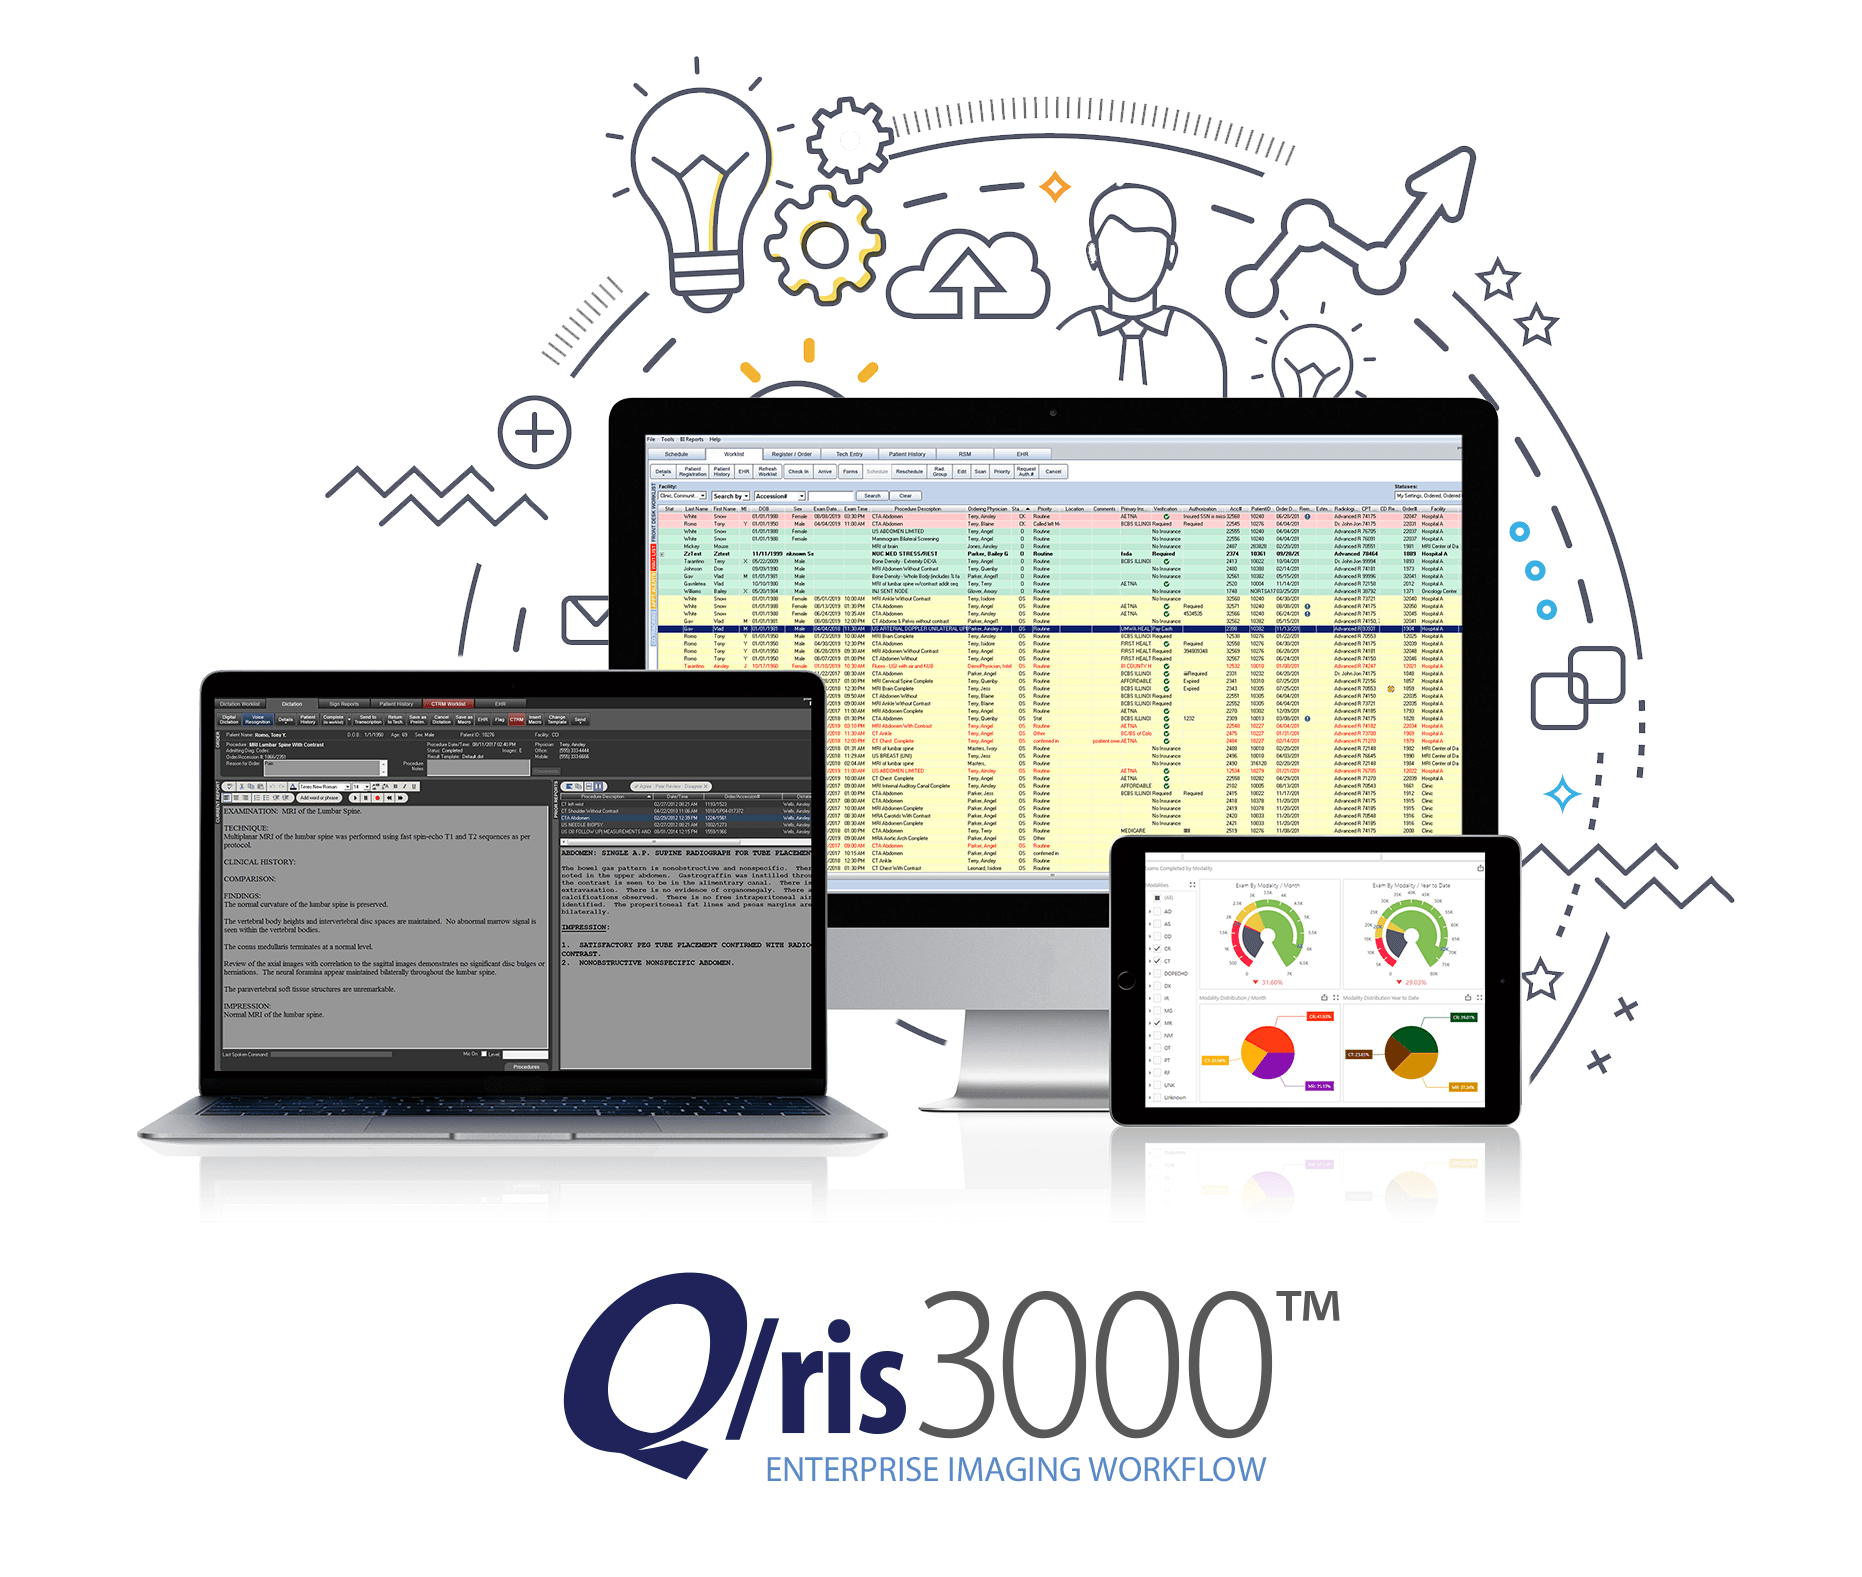 Q/ris 3000 Enterprise Imaging Workflow